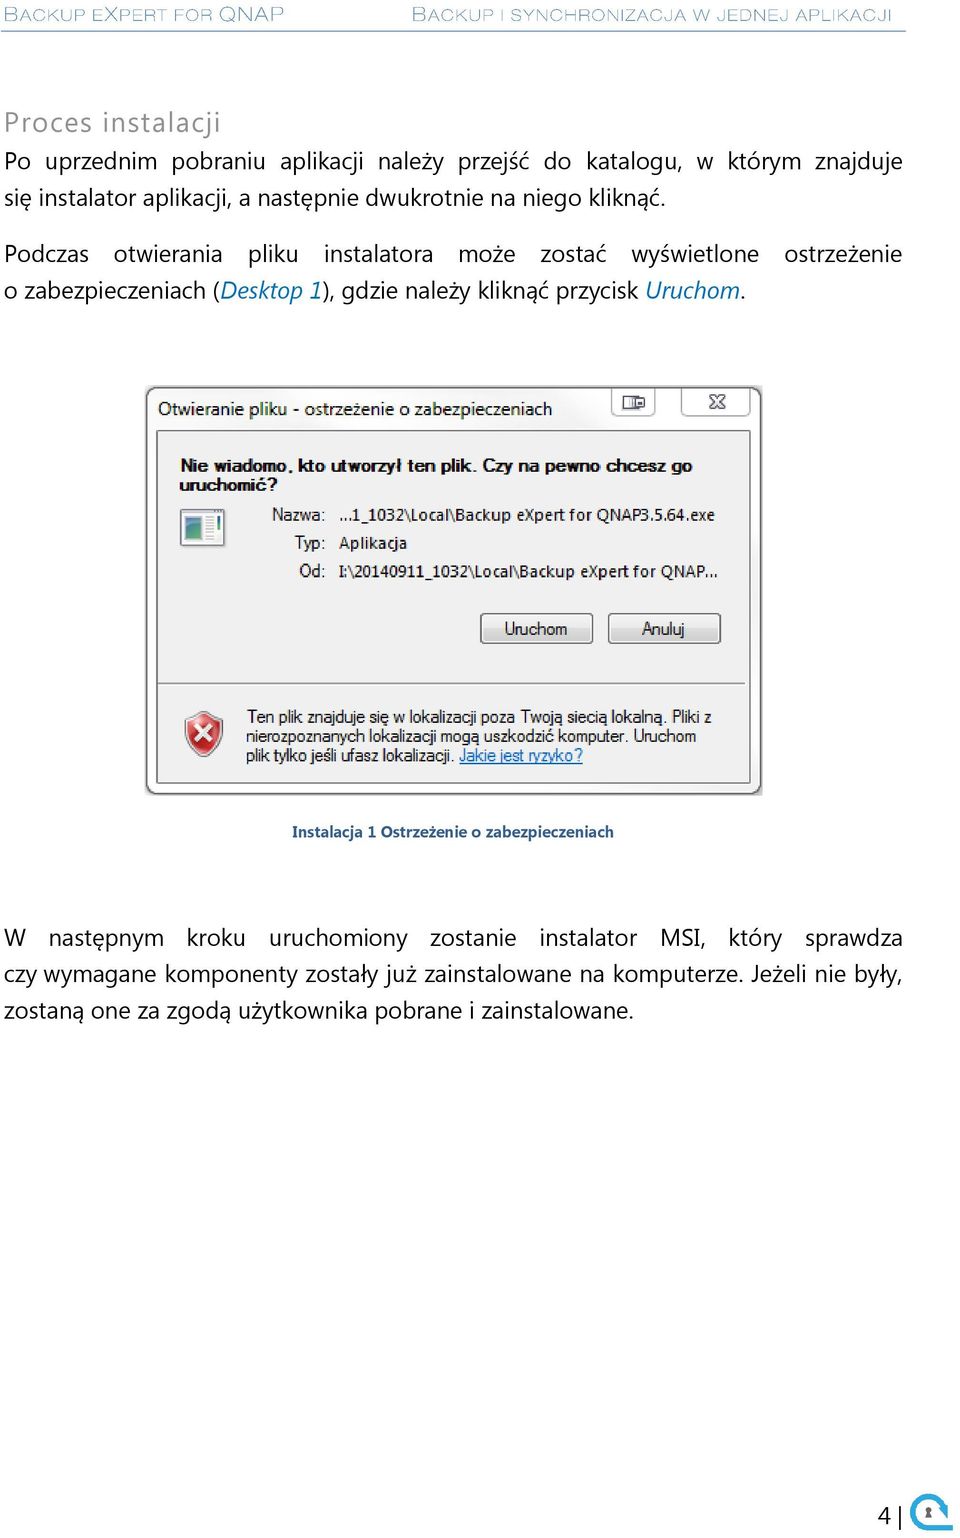 Podczas otwierania pliku instalatora może zostać wyświetlone ostrzeżenie o zabezpieczeniach (Desktop 1), gdzie należy kliknąć przycisk